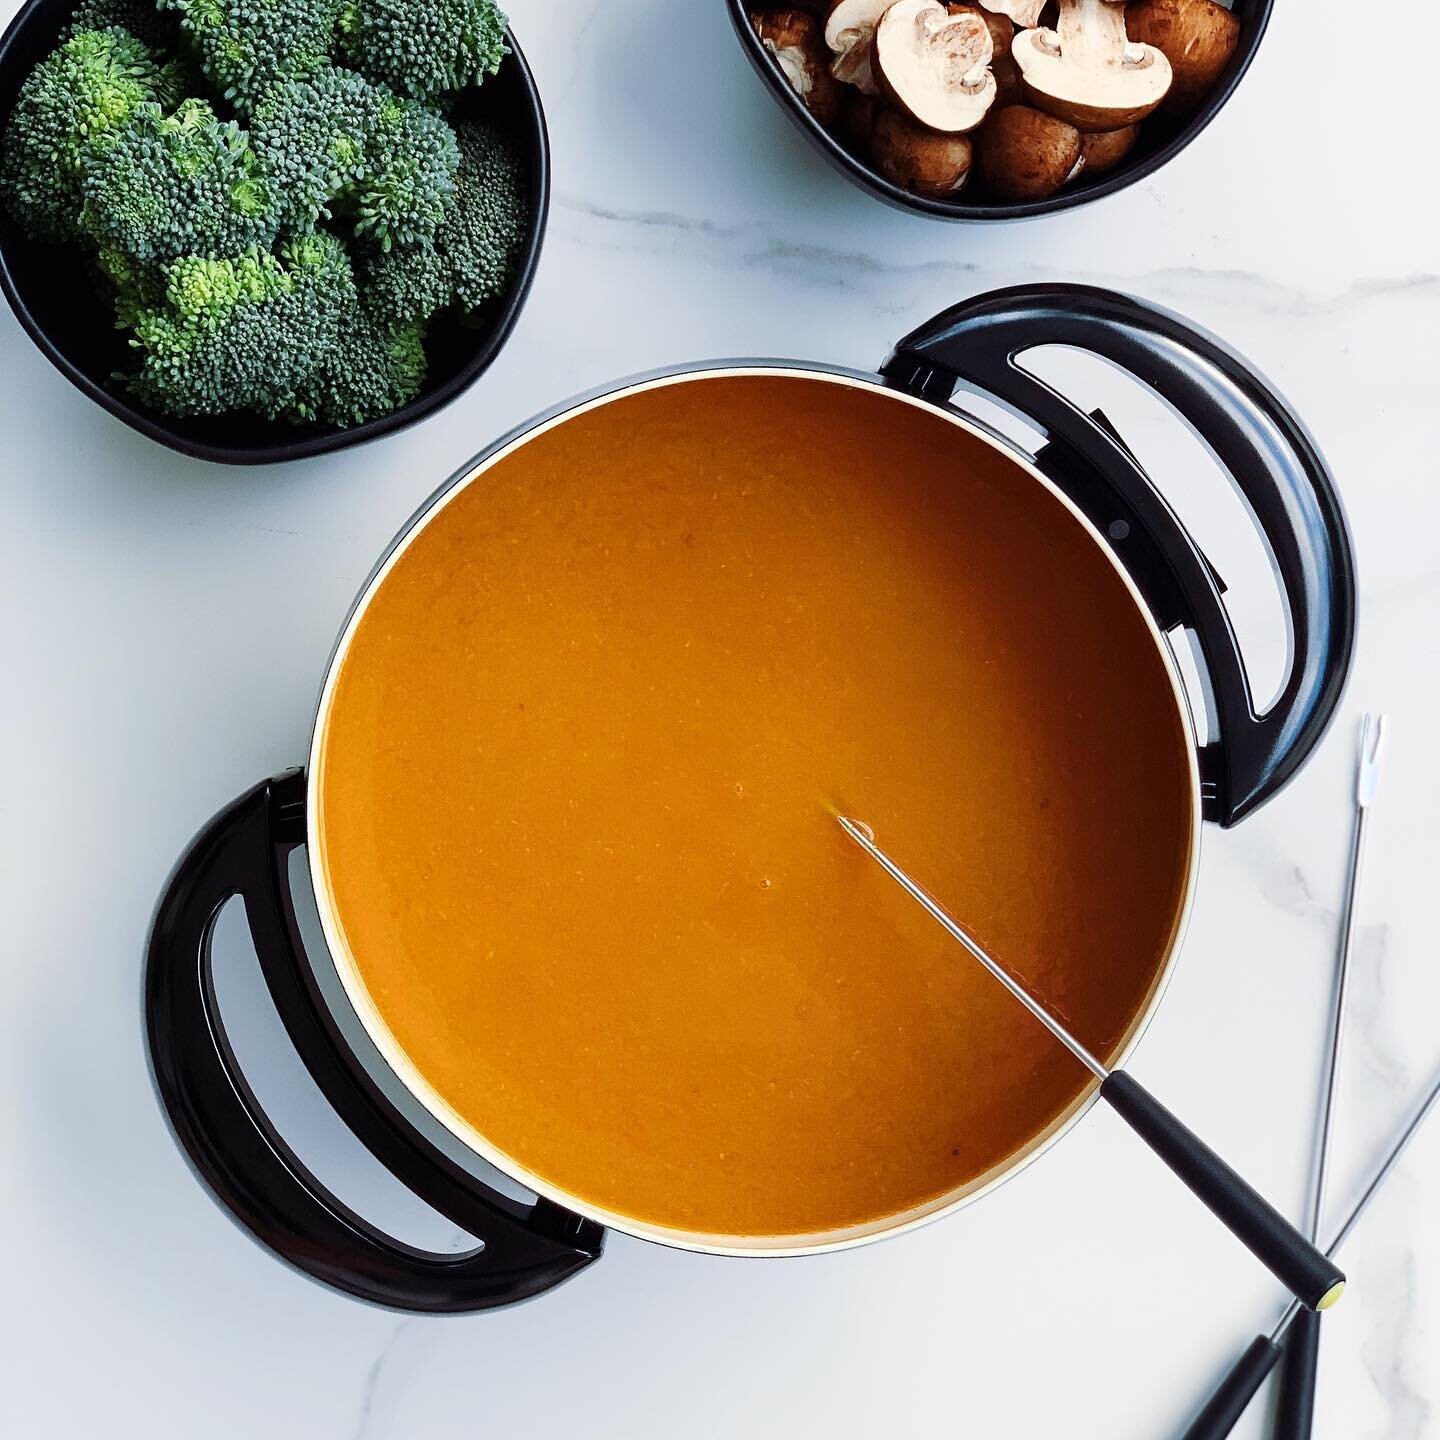 ✨Nouvelle recette en ligne✨

👉🏻Bouillon de fondue maison au curcuma

Qui dit St-Valentin ❤️dit fondue! Alors voici une recette de bouillon maison extr&ecirc;mement facile &agrave; pr&eacute;parer. Faire son bouillon soi-m&ecirc;me n&rsquo;est pas c